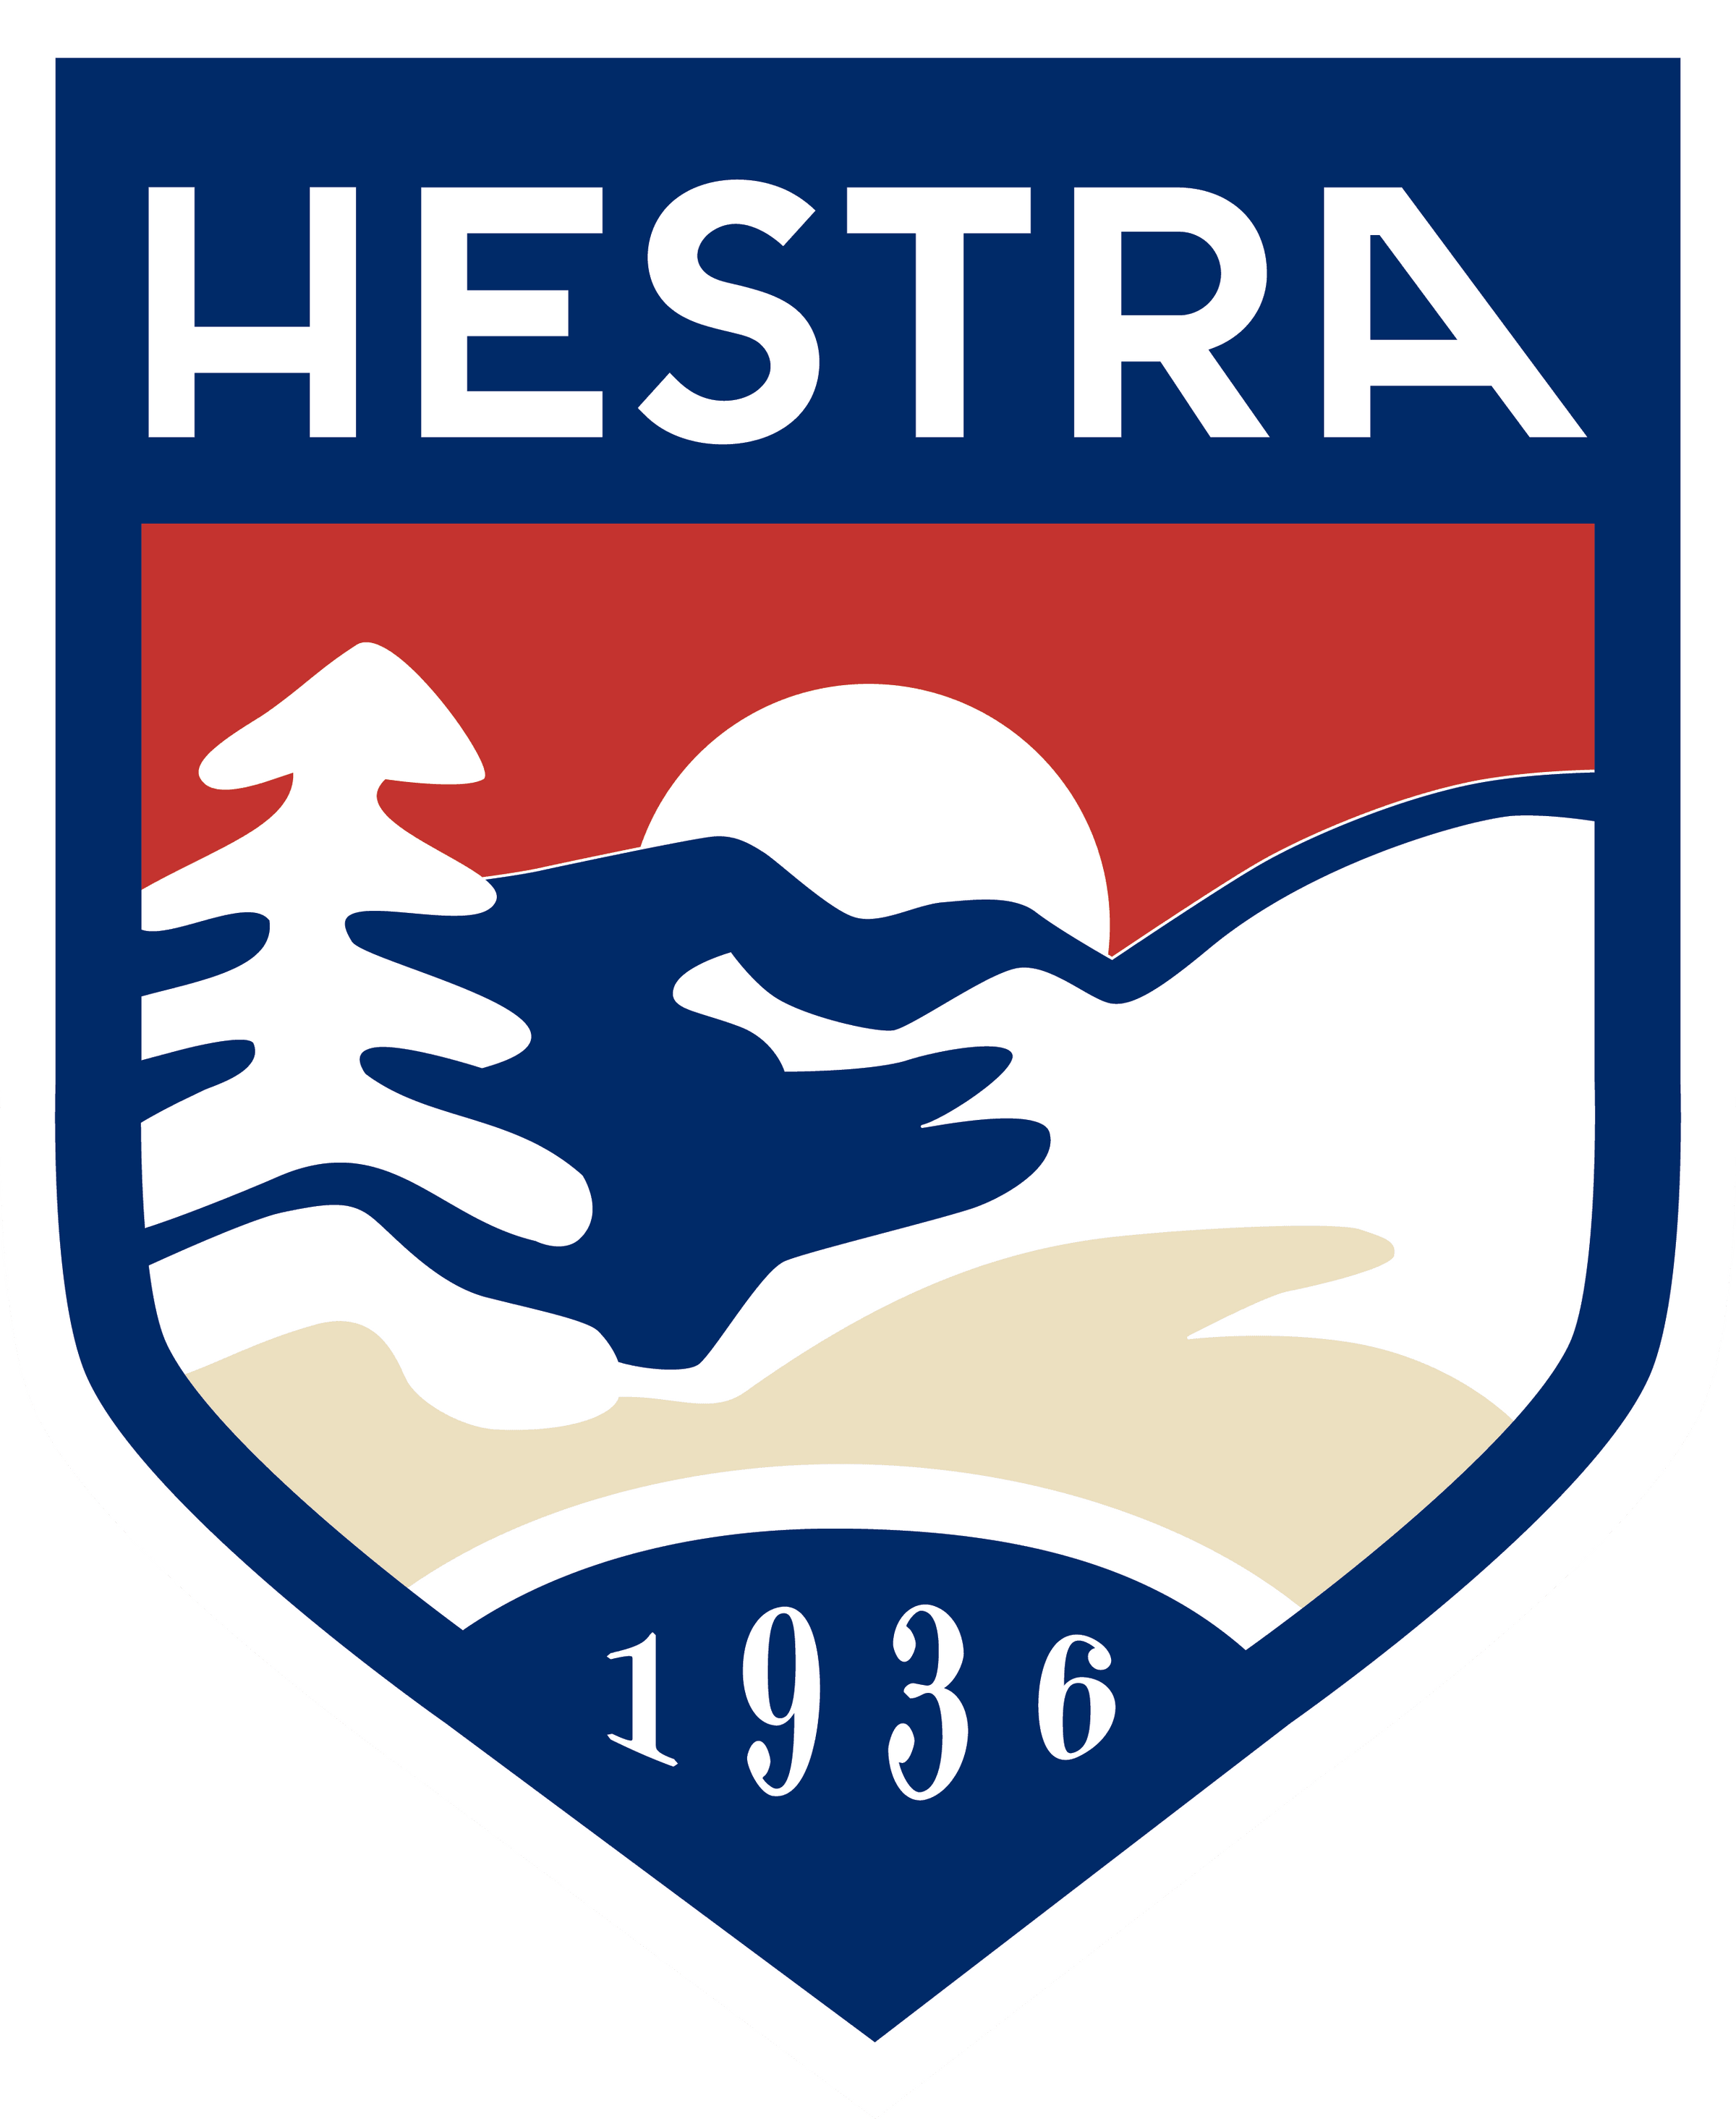 Hestra - Gielen Lederwaren